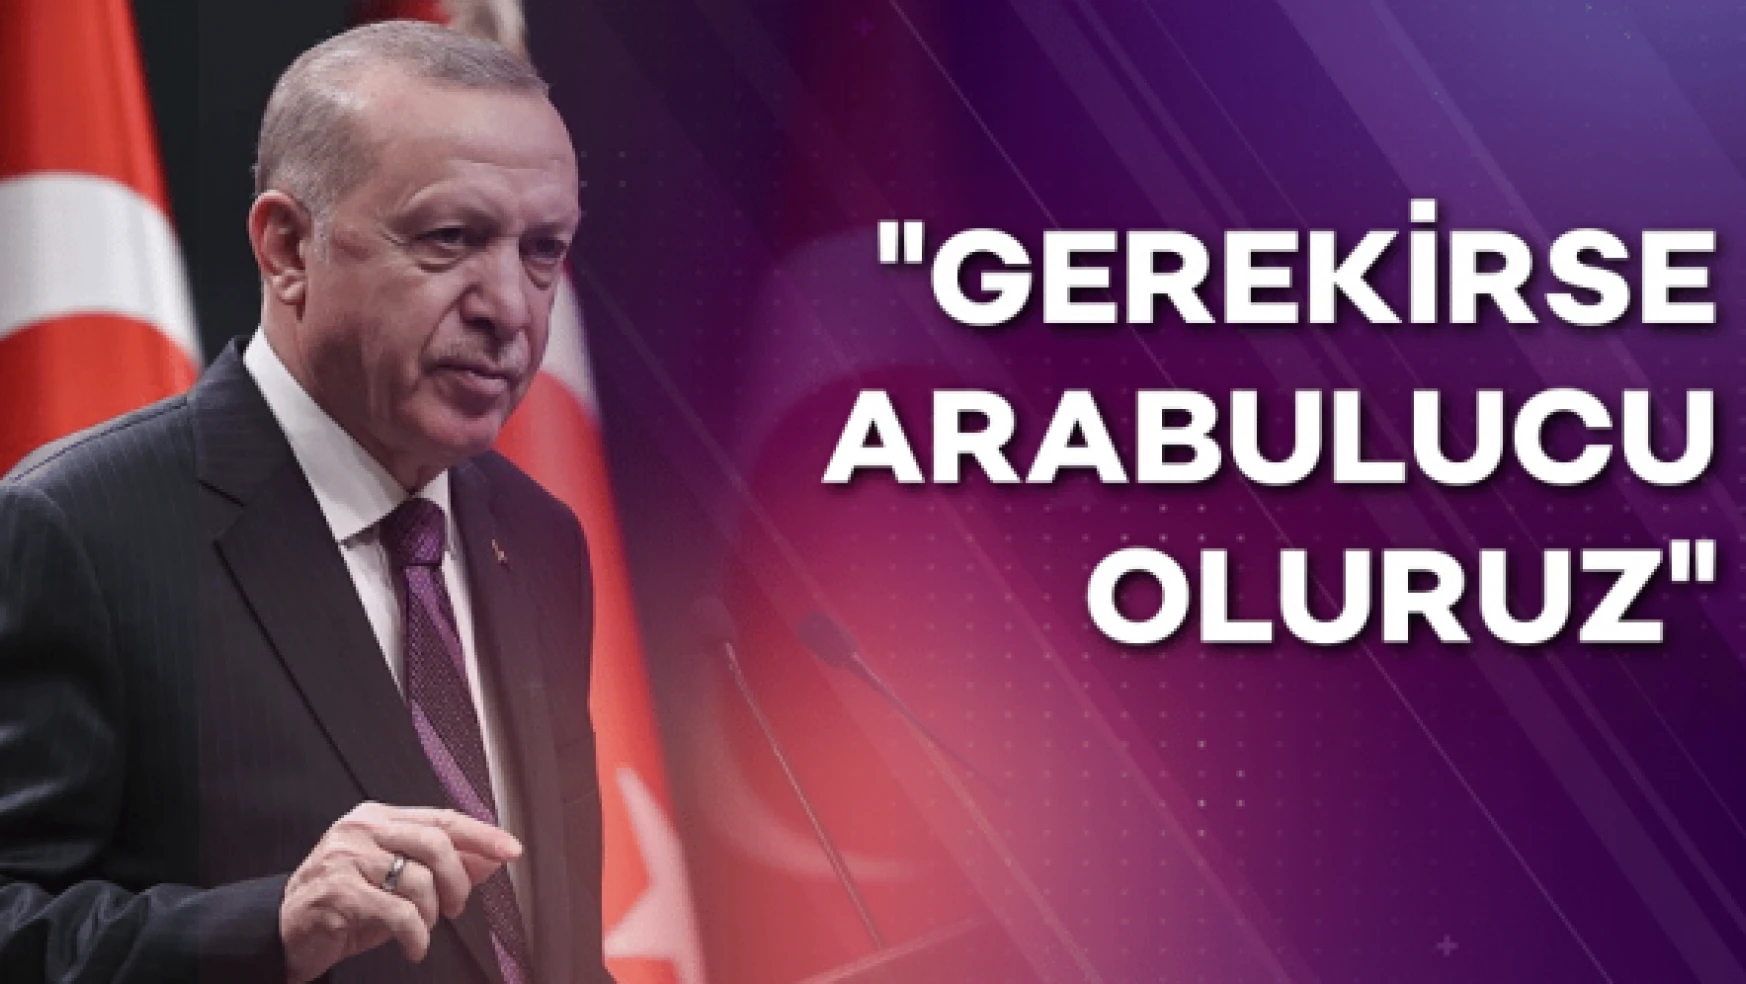 Cumhurbaşkanı Erdoğan: &quotGerekirse arabulucu oluruz"